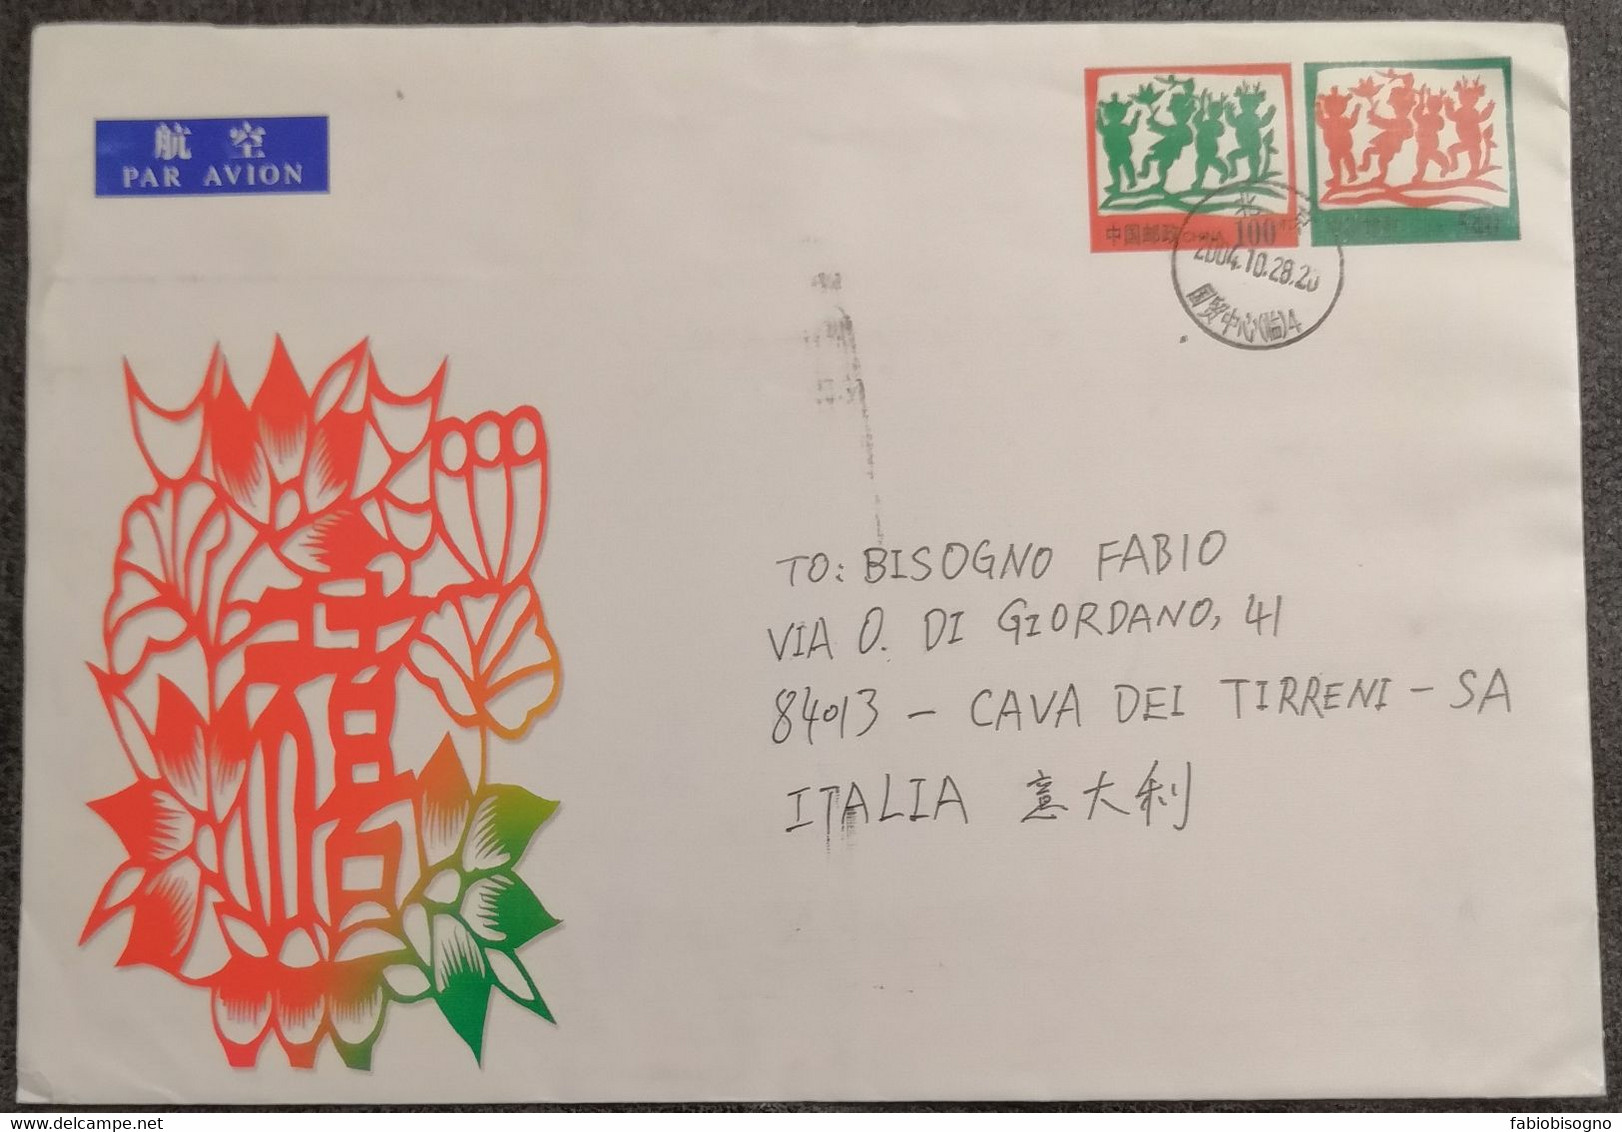 China 2004 - 540 + 100 - Air Mail Postal Cover To Italy - Aerograms